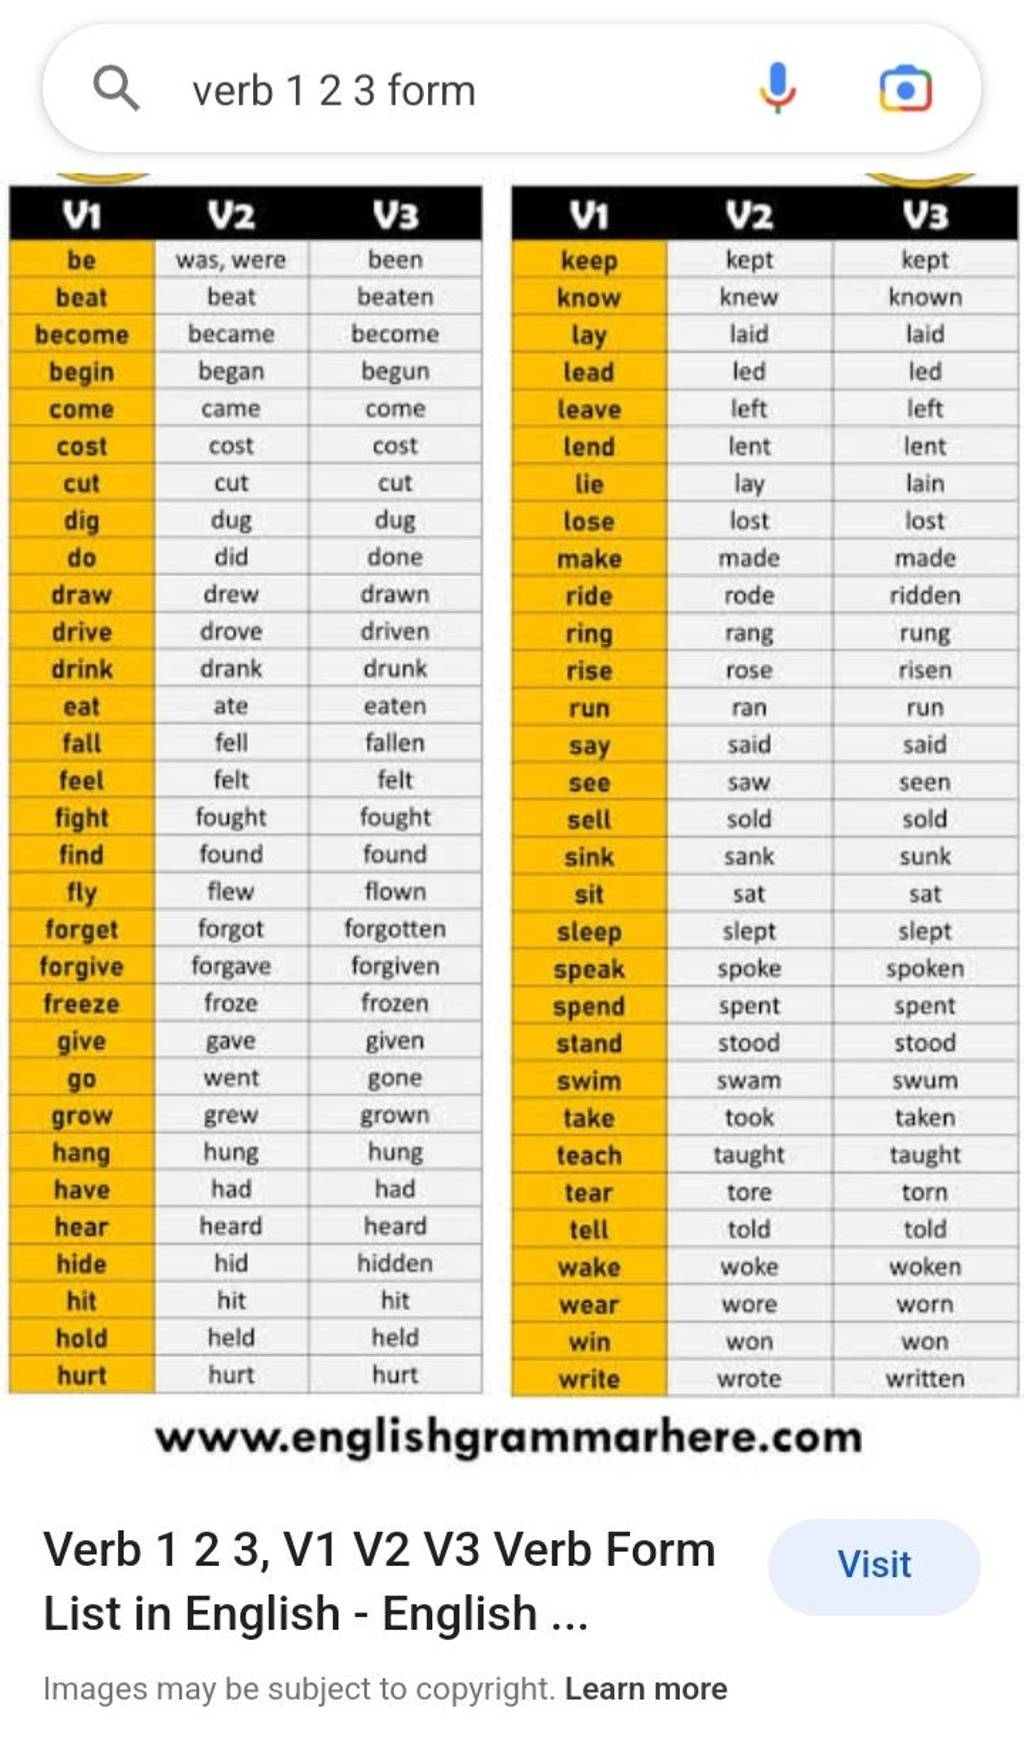 15 COMMON VERBS in English, V1 V2 V3 Verbs List